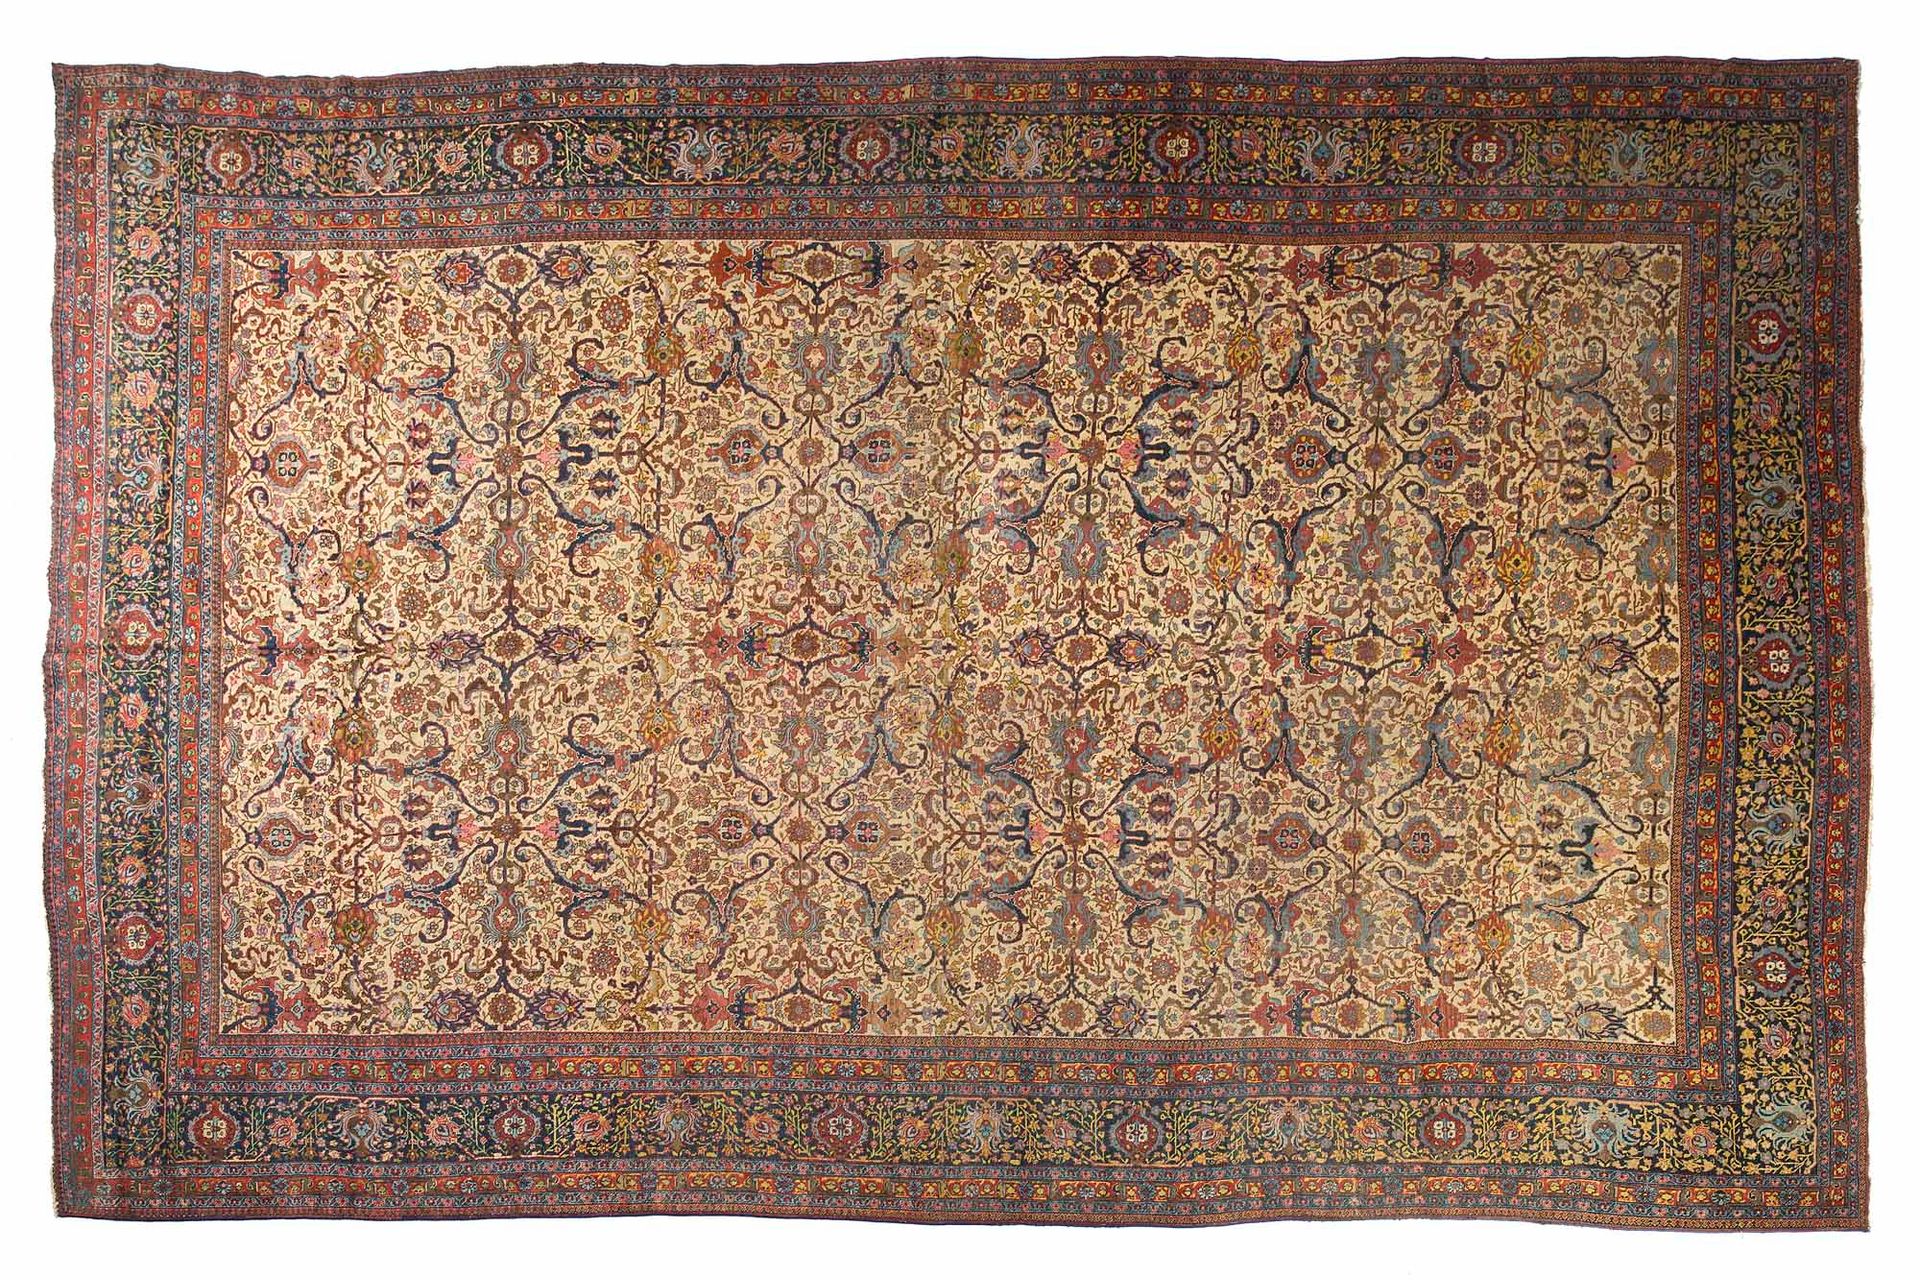 Null TABRIZ carpet (Persia), late 19th century

Dimensions : 515 x 340cm.

Techn&hellip;